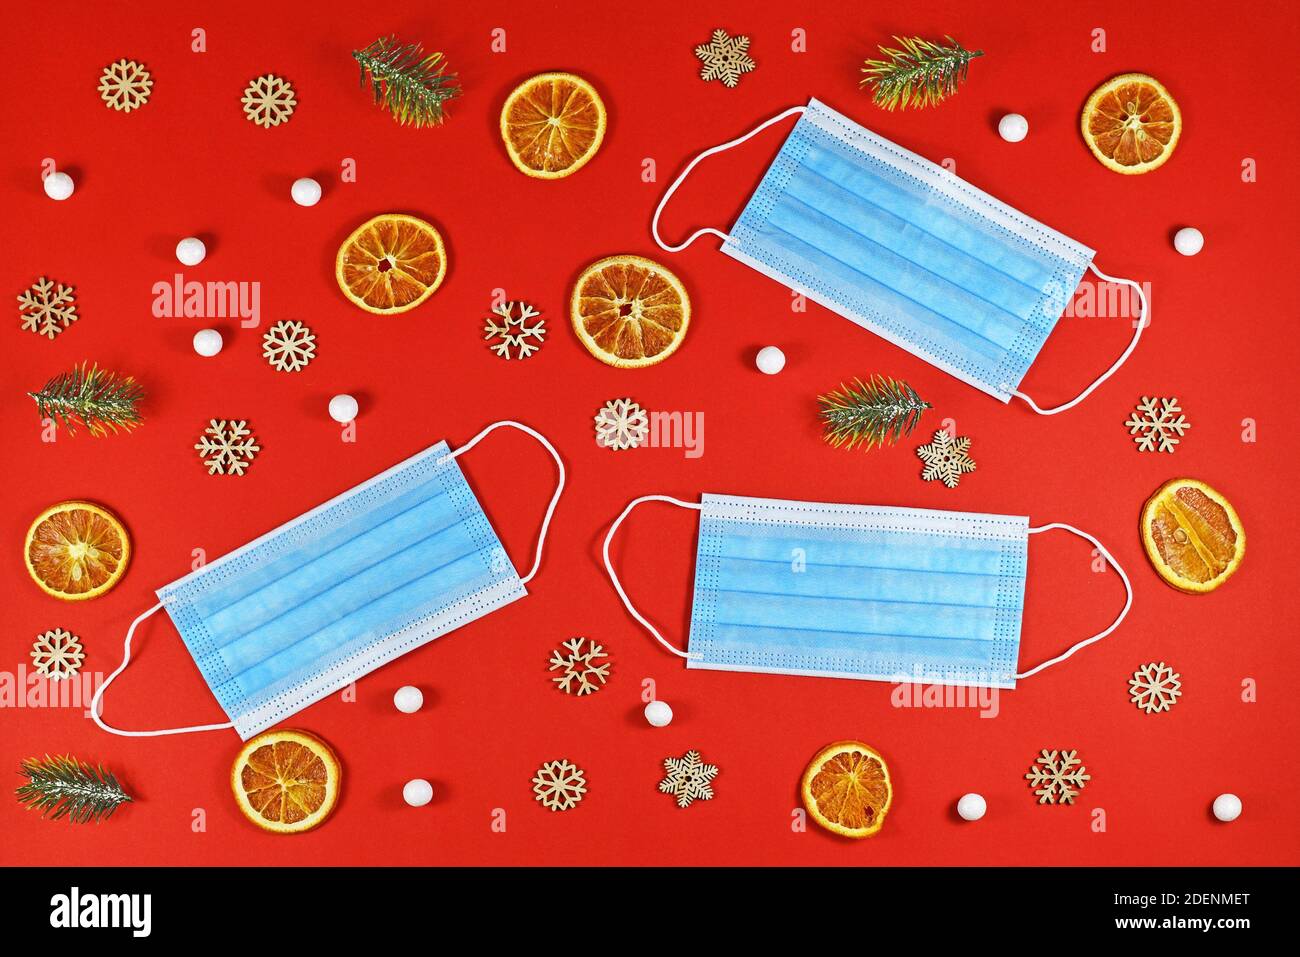 Weihnachten während der Corona Virus Times Konzept mit medizinischer Gesichtsmaske Umgeben von festlichen Weihnachtsornamenten auf rotem Hintergrund Stockfoto